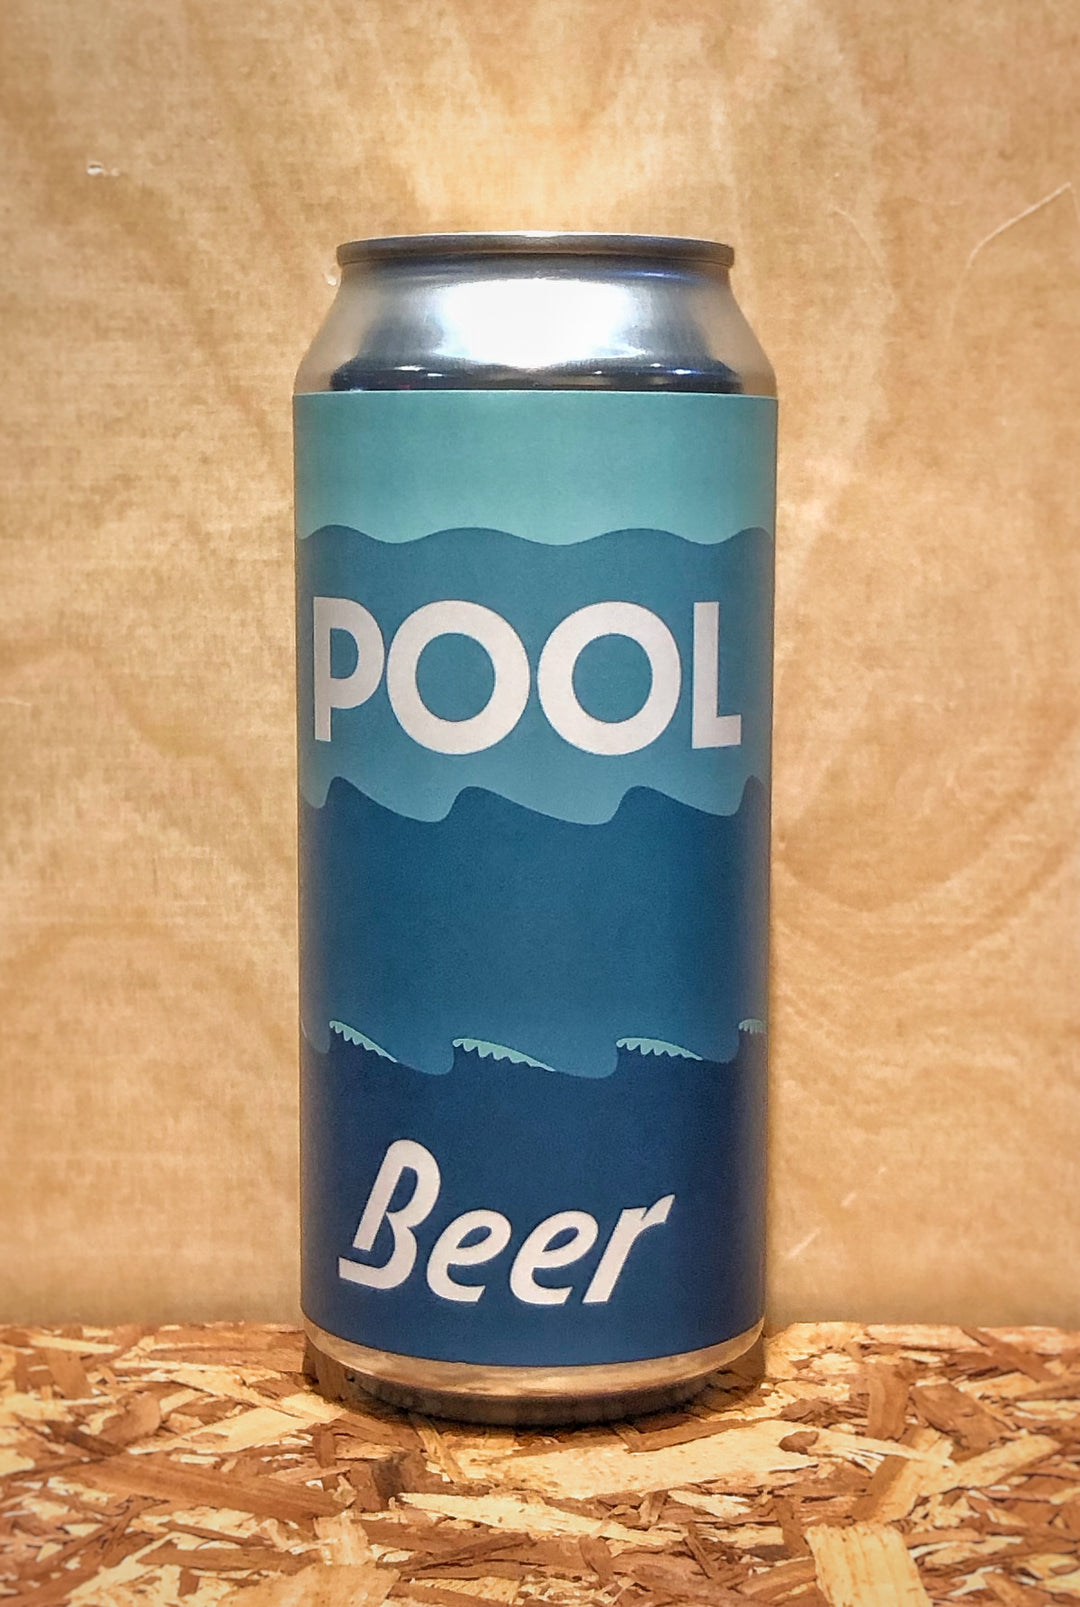 SEMOH Beer Co. 'Pool Beer' Pilsner (Ann Arbor, MI)